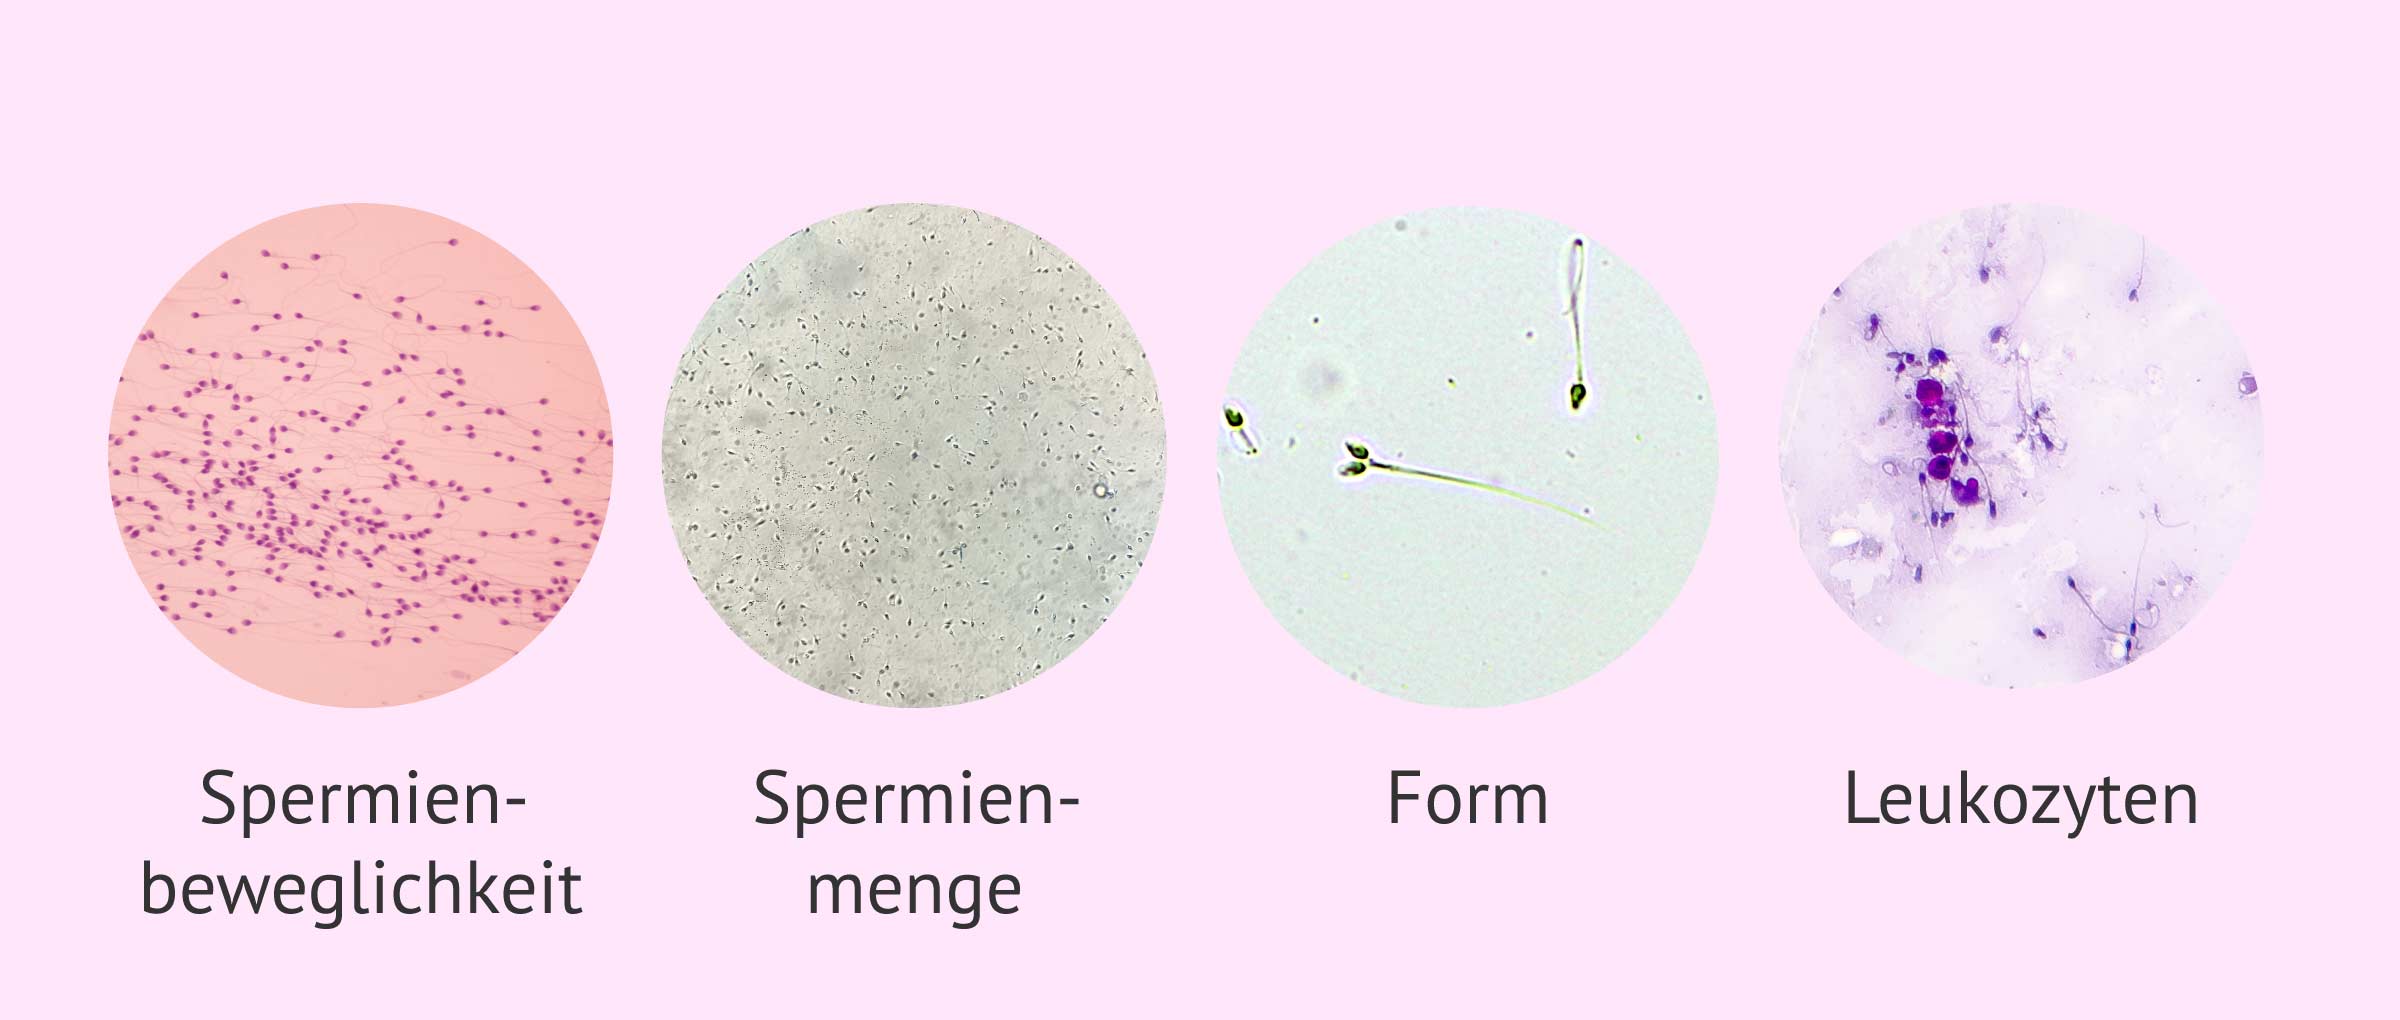 Mikroskopische Parameter einer Samenanalyse